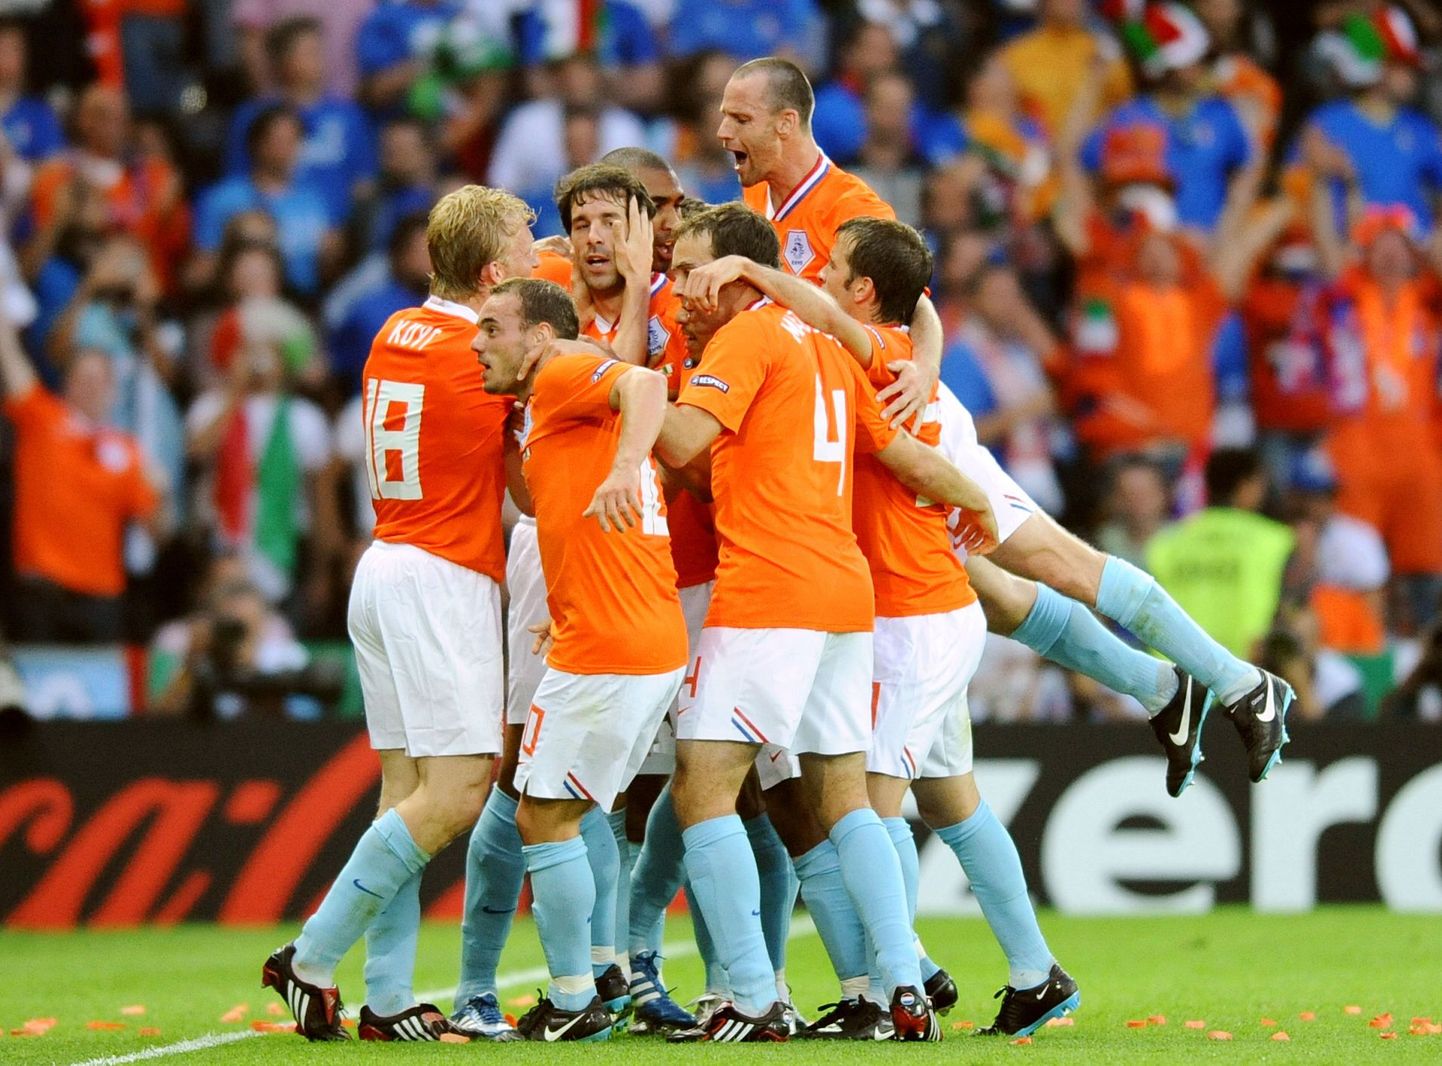 Hollandi jalgpallikoondis võitis valitseva maailmameistri Itaalia 3:0.